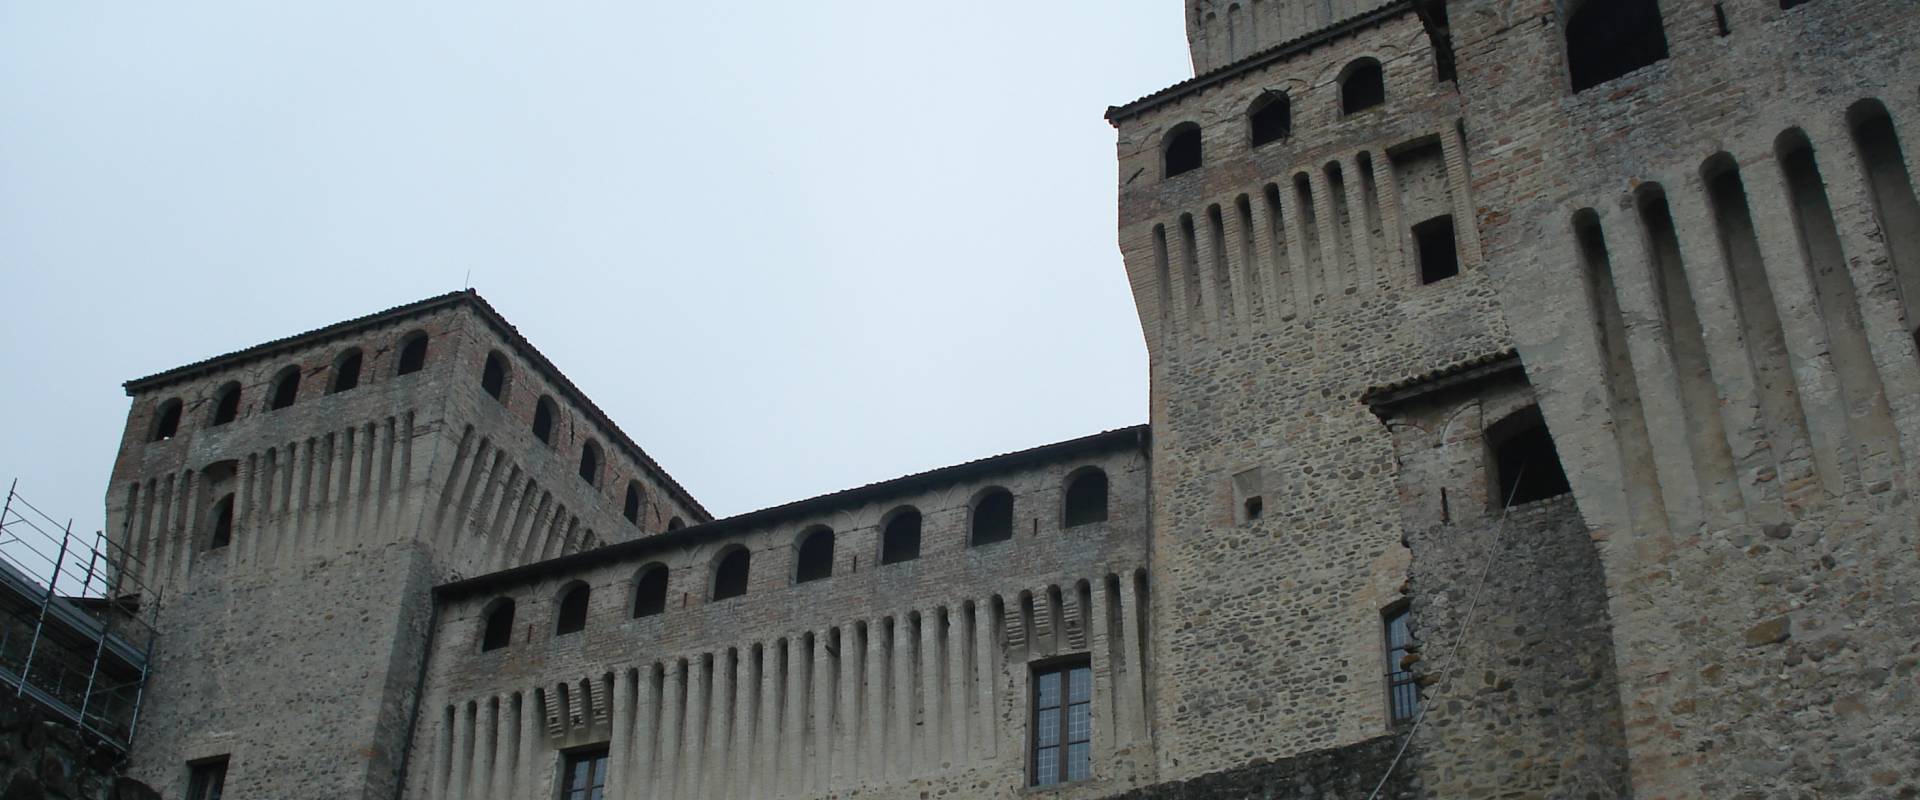 Castello di Torrechiara 01 photo by Postcrosser